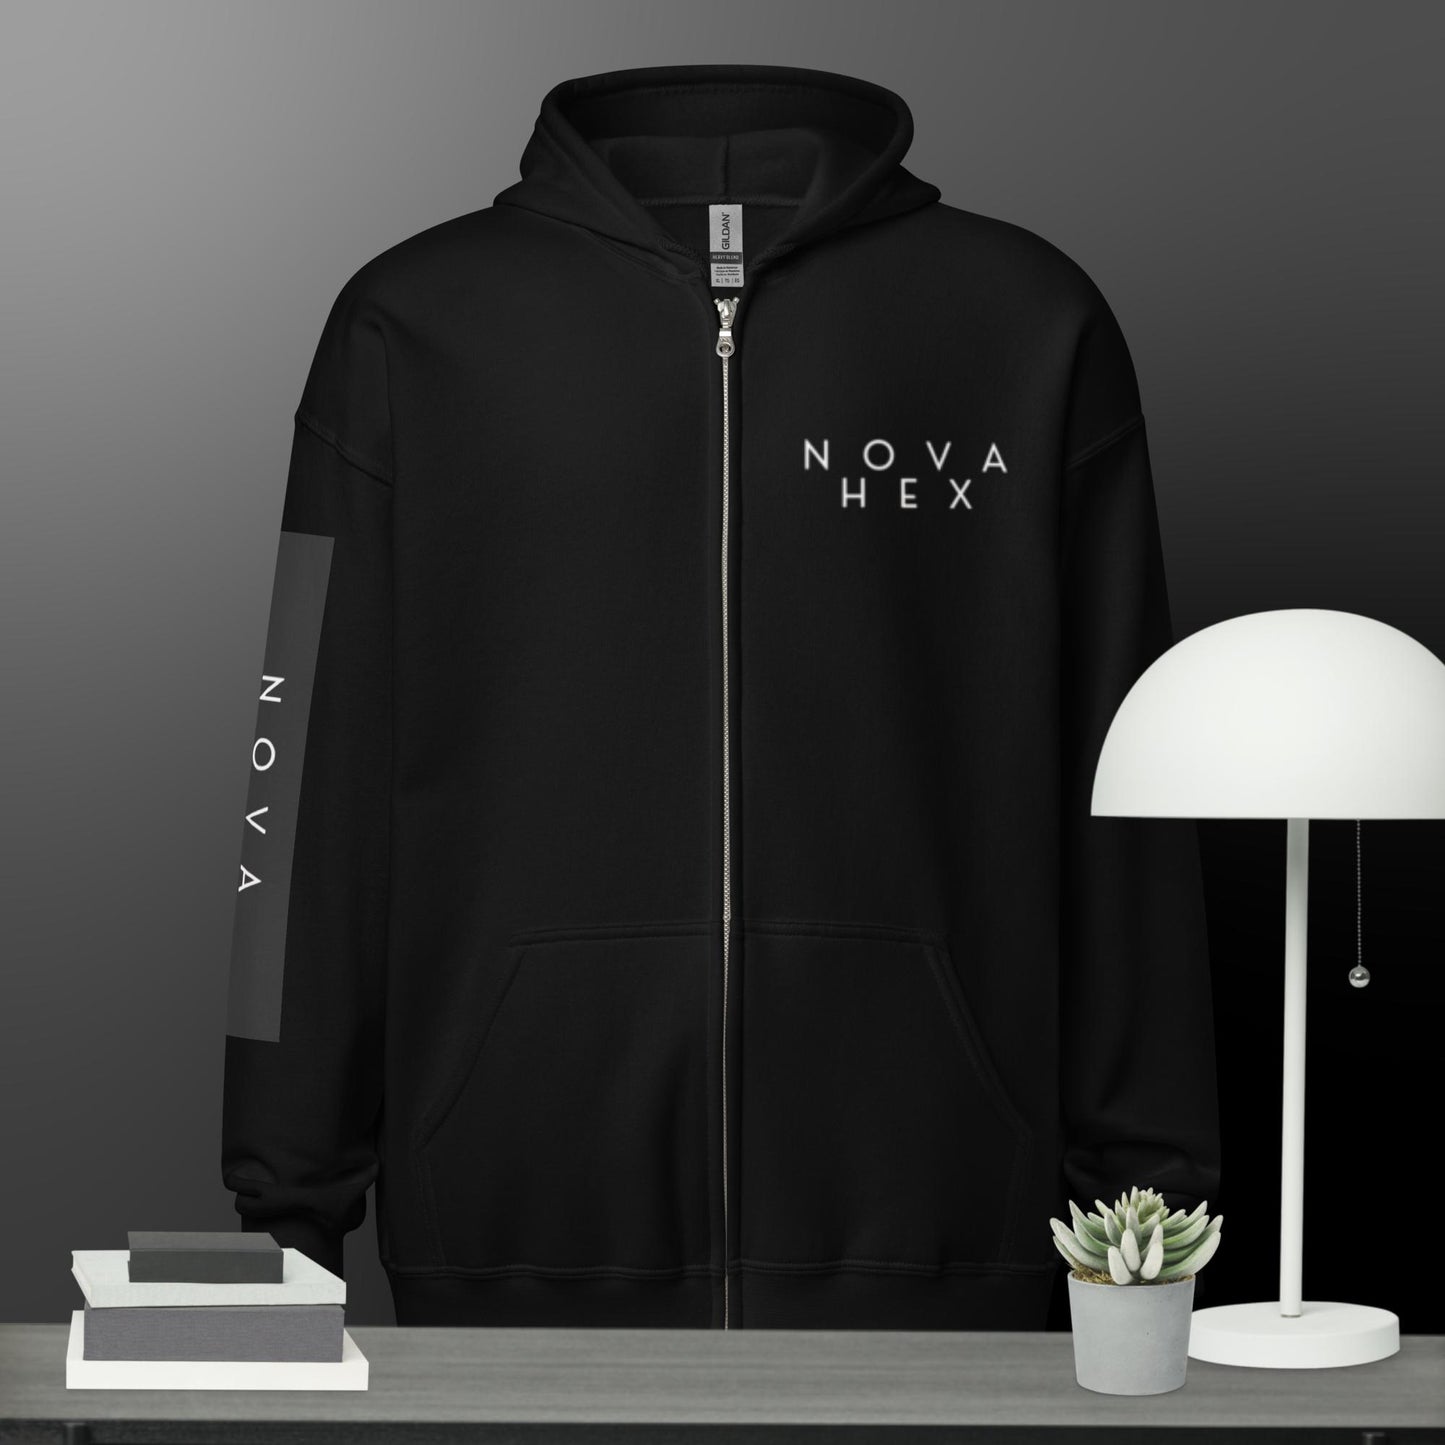 Hex Nova Unisex heavy blend zip hoodie